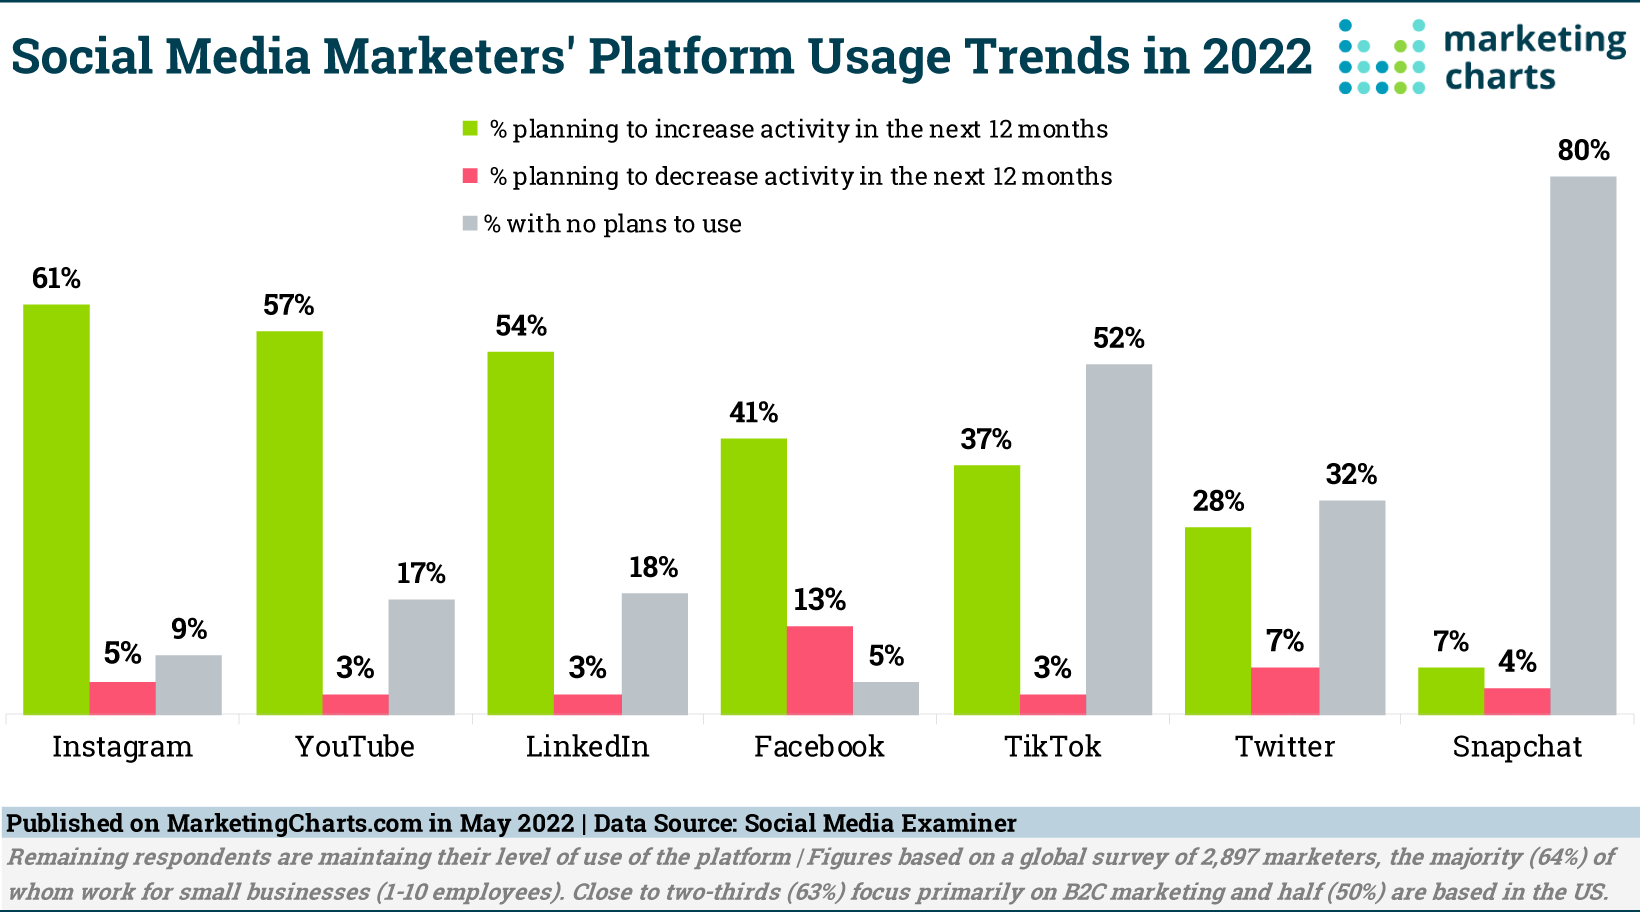 Social Media Marketer Platforms